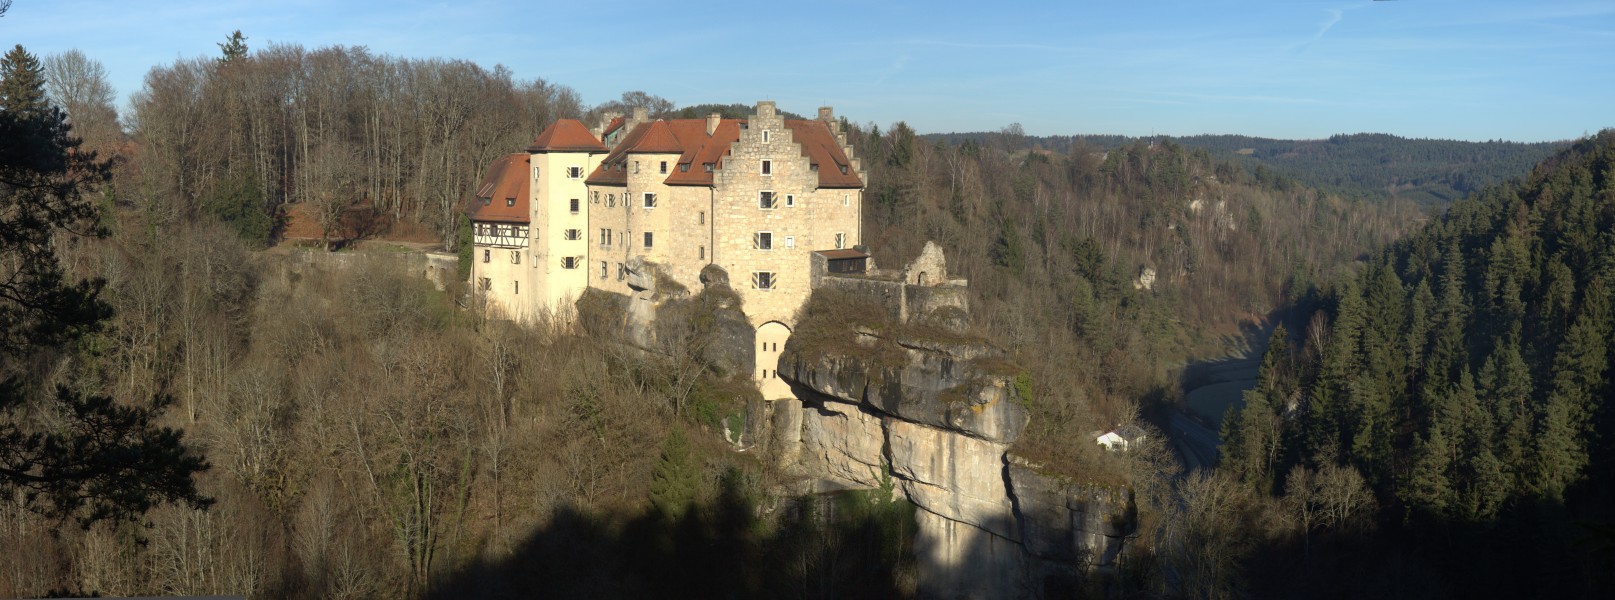 Burg Rabenstein03